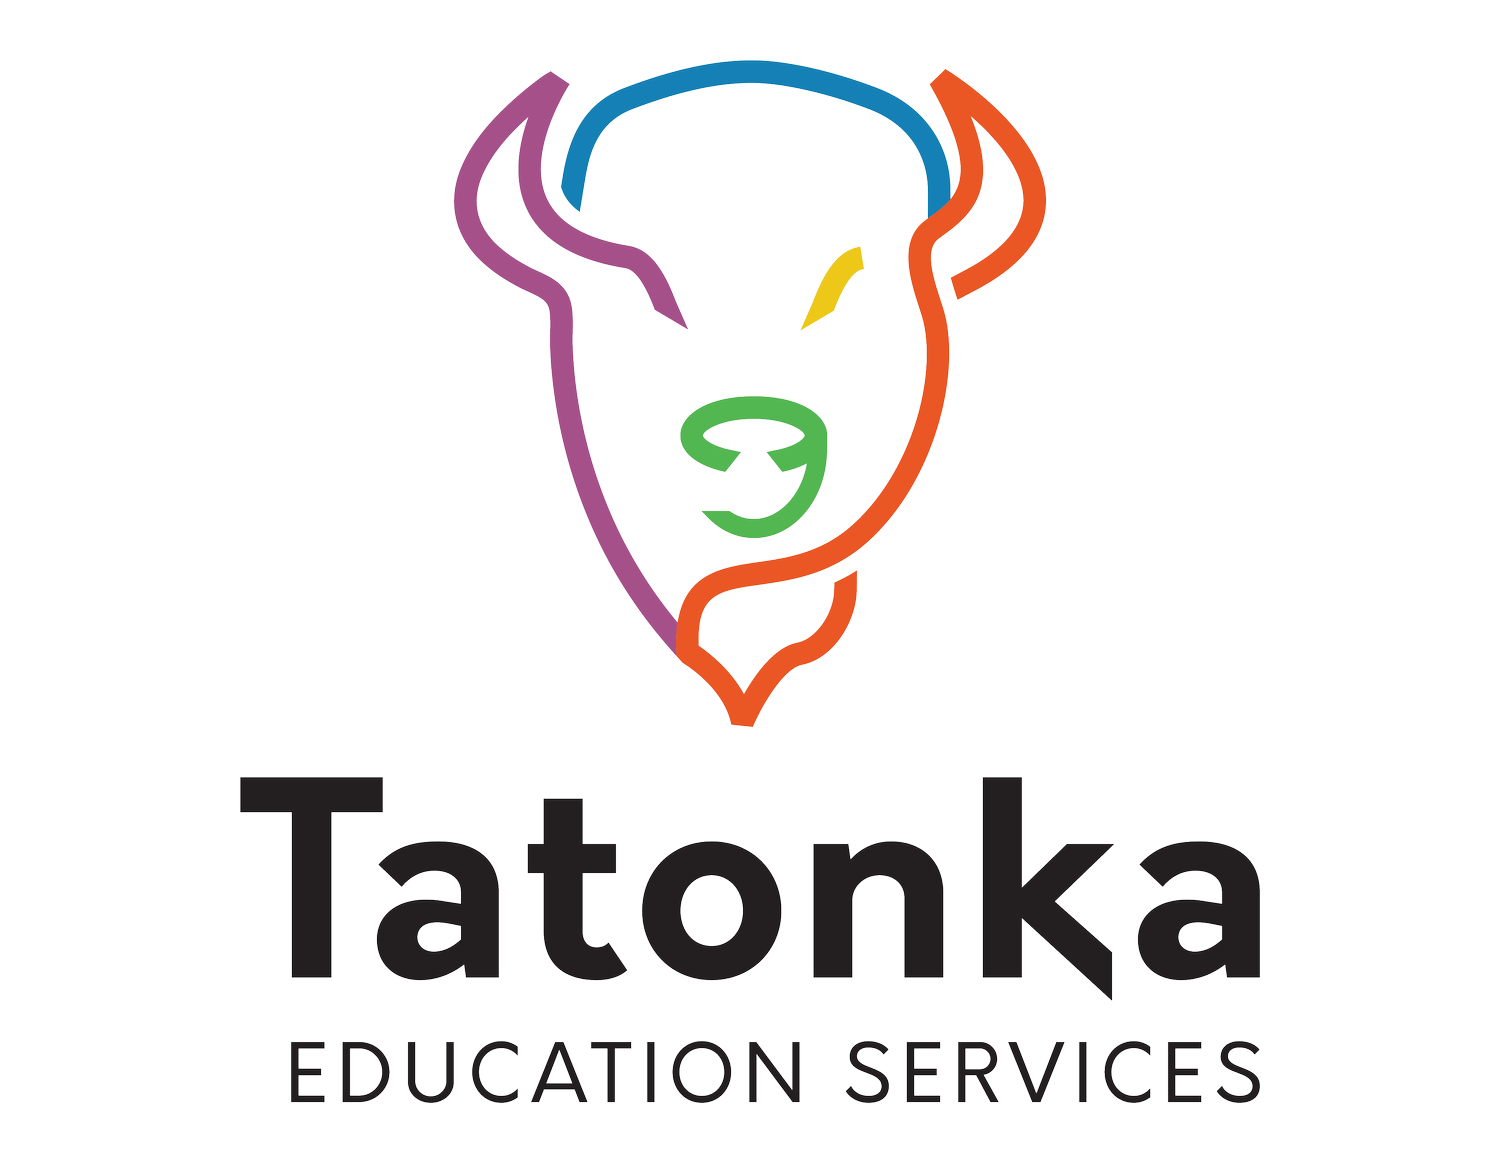 Tatonka Education Services